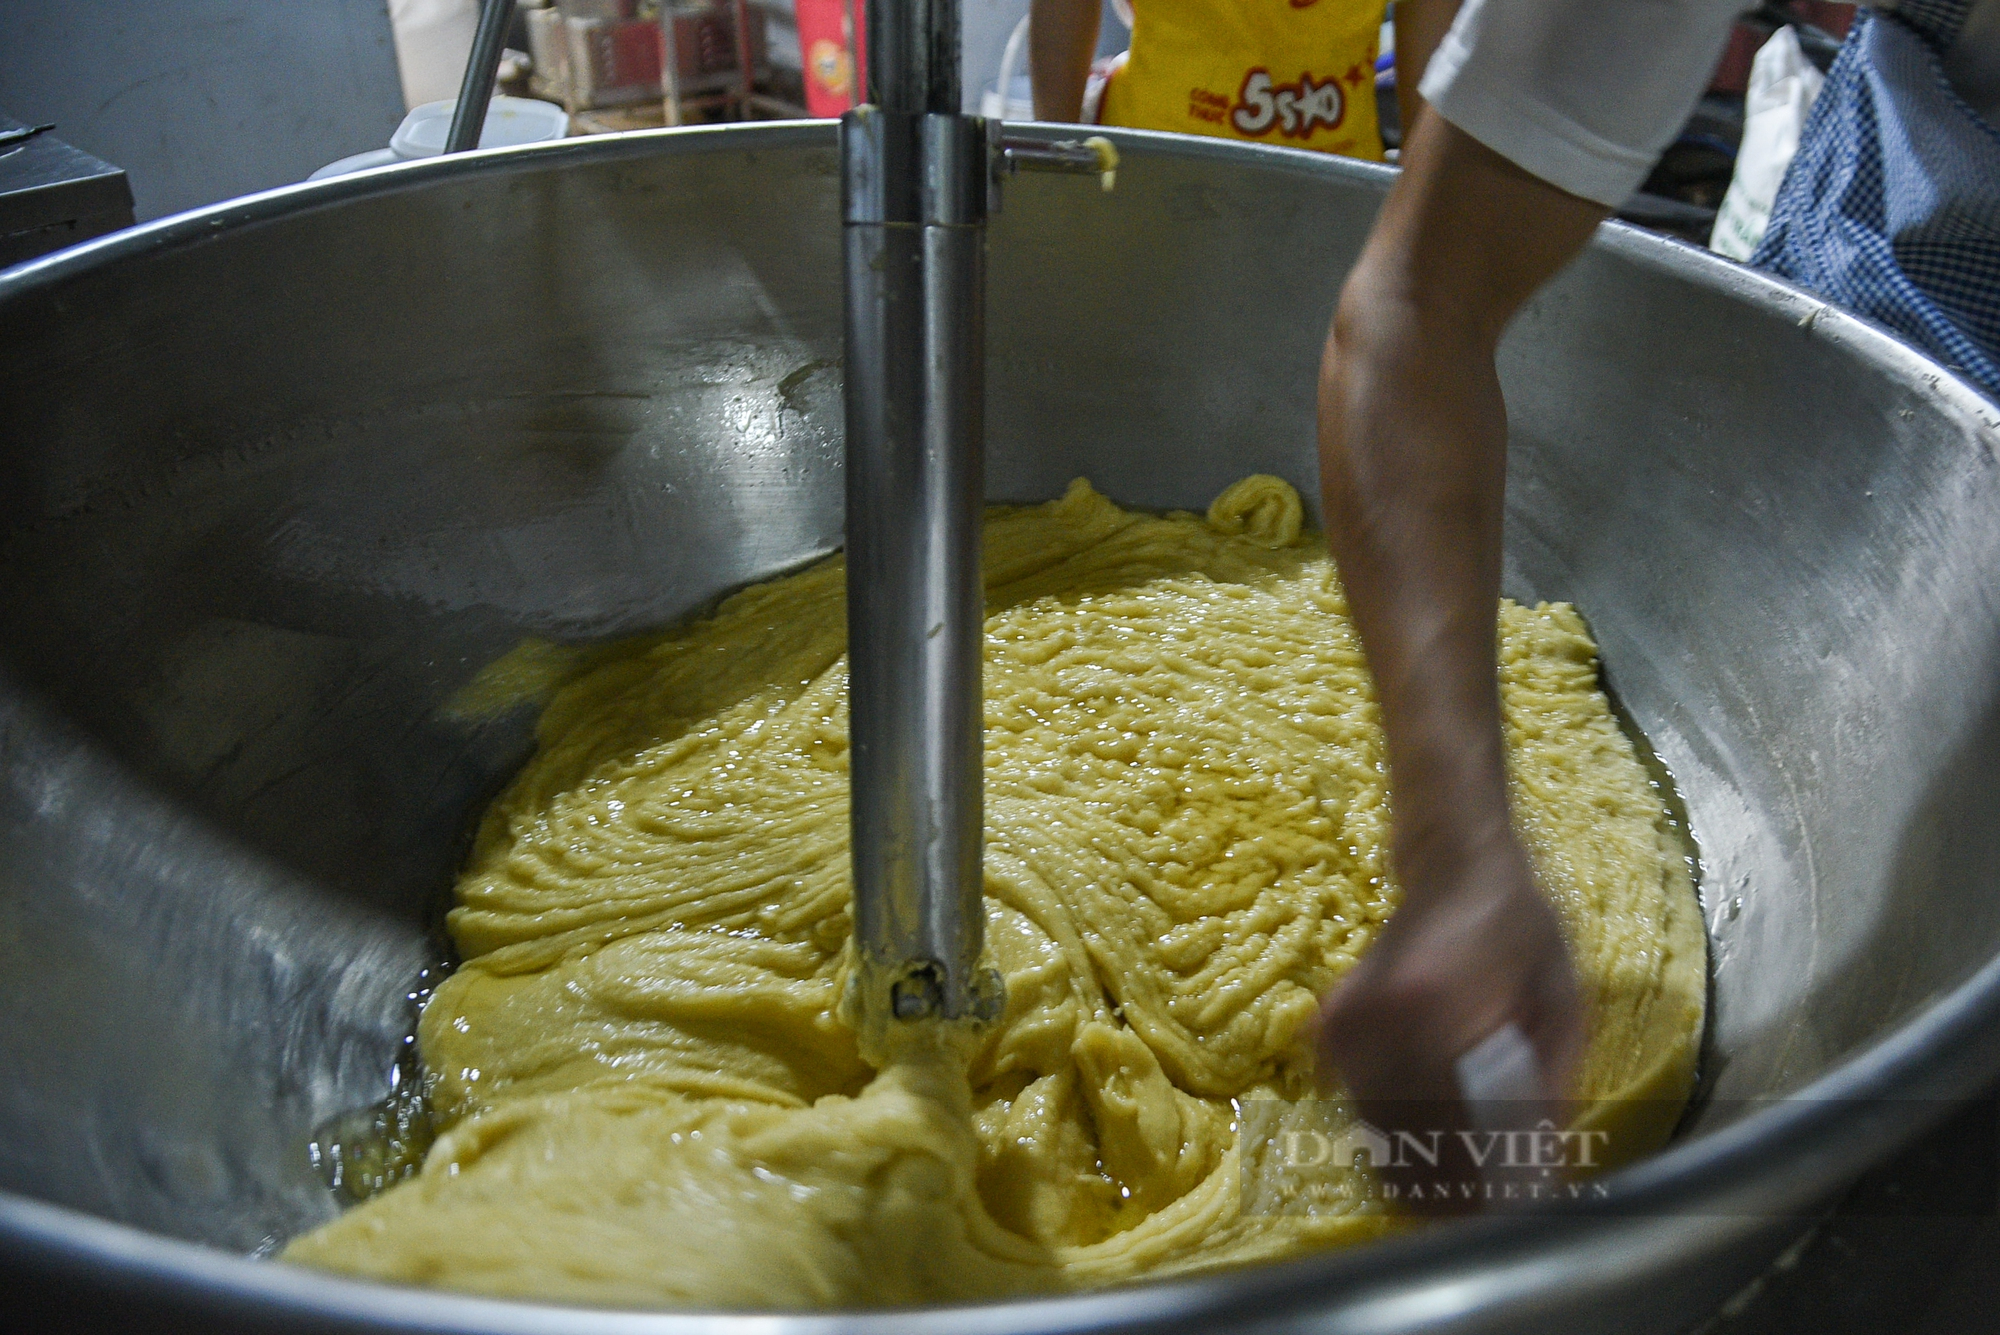 Cận cảnh quy trình sản xuất bánh Trung thu ở một cửa hàng lâu đời tại Hà Nội - Ảnh 4.